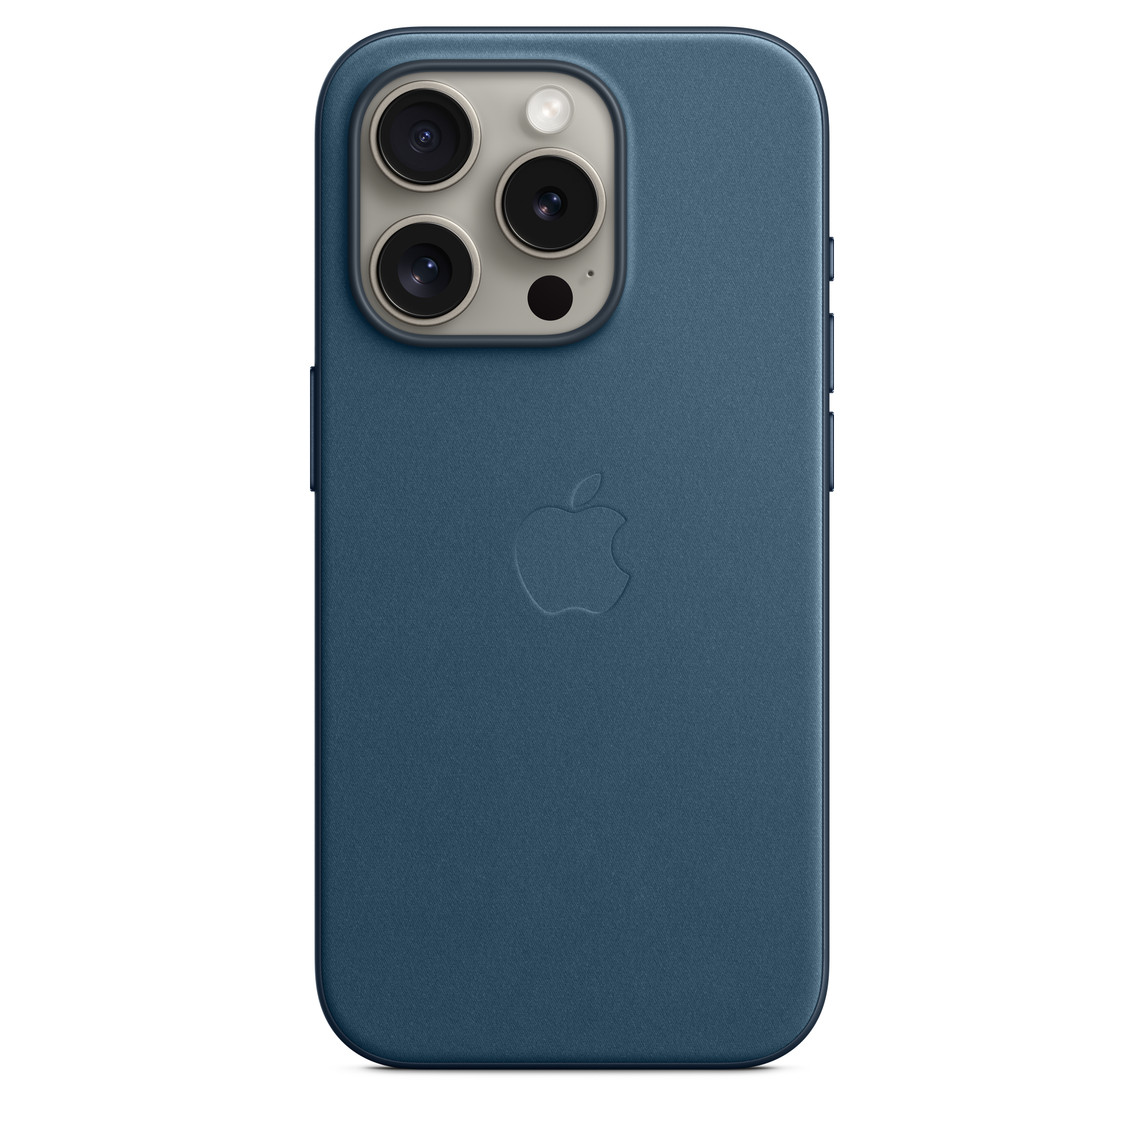 iPhone 15 Pro 专用 MagSafe 精织斜纹保护壳的海蓝色款，中心嵌有 Apple 标志，安装在原色钛金属外观的 iPhone 15 Pro 上，可看到露出的摄像头。